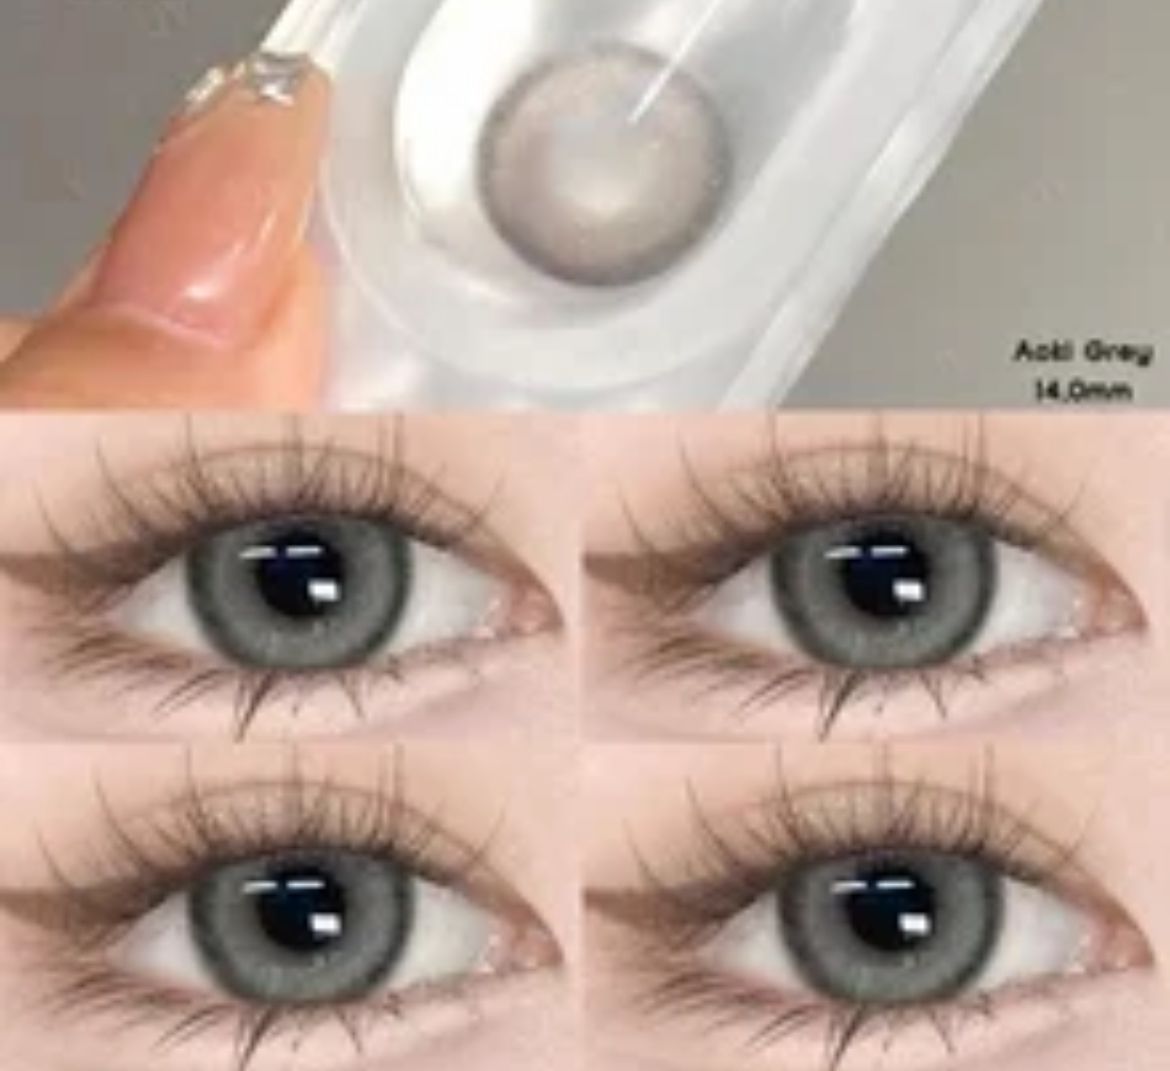 Aoki Grey lenses